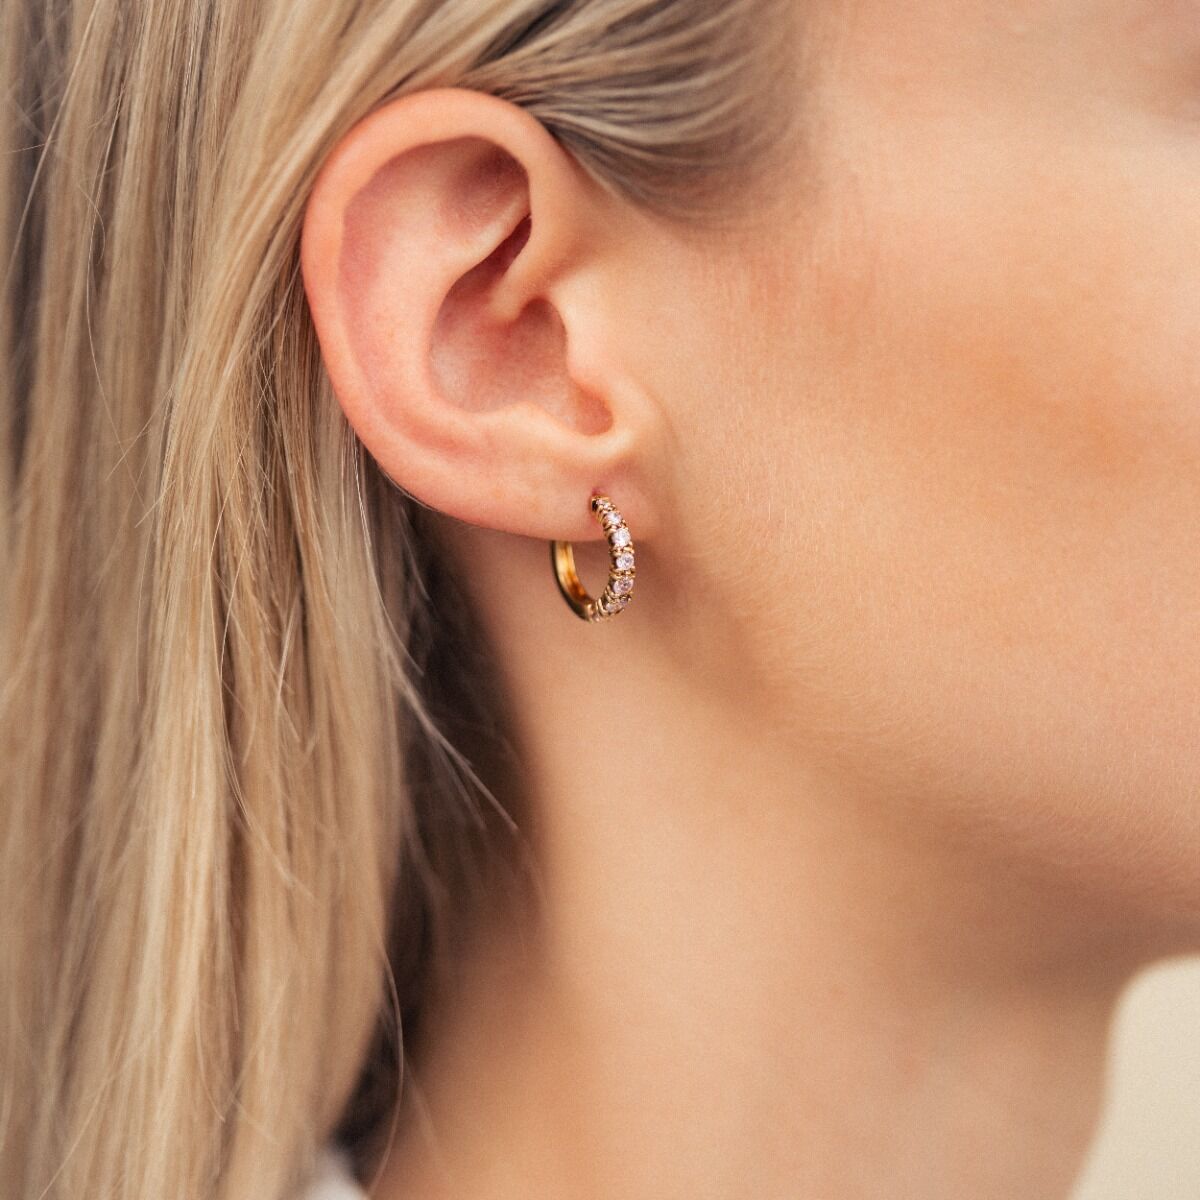 Birthstone Earrings